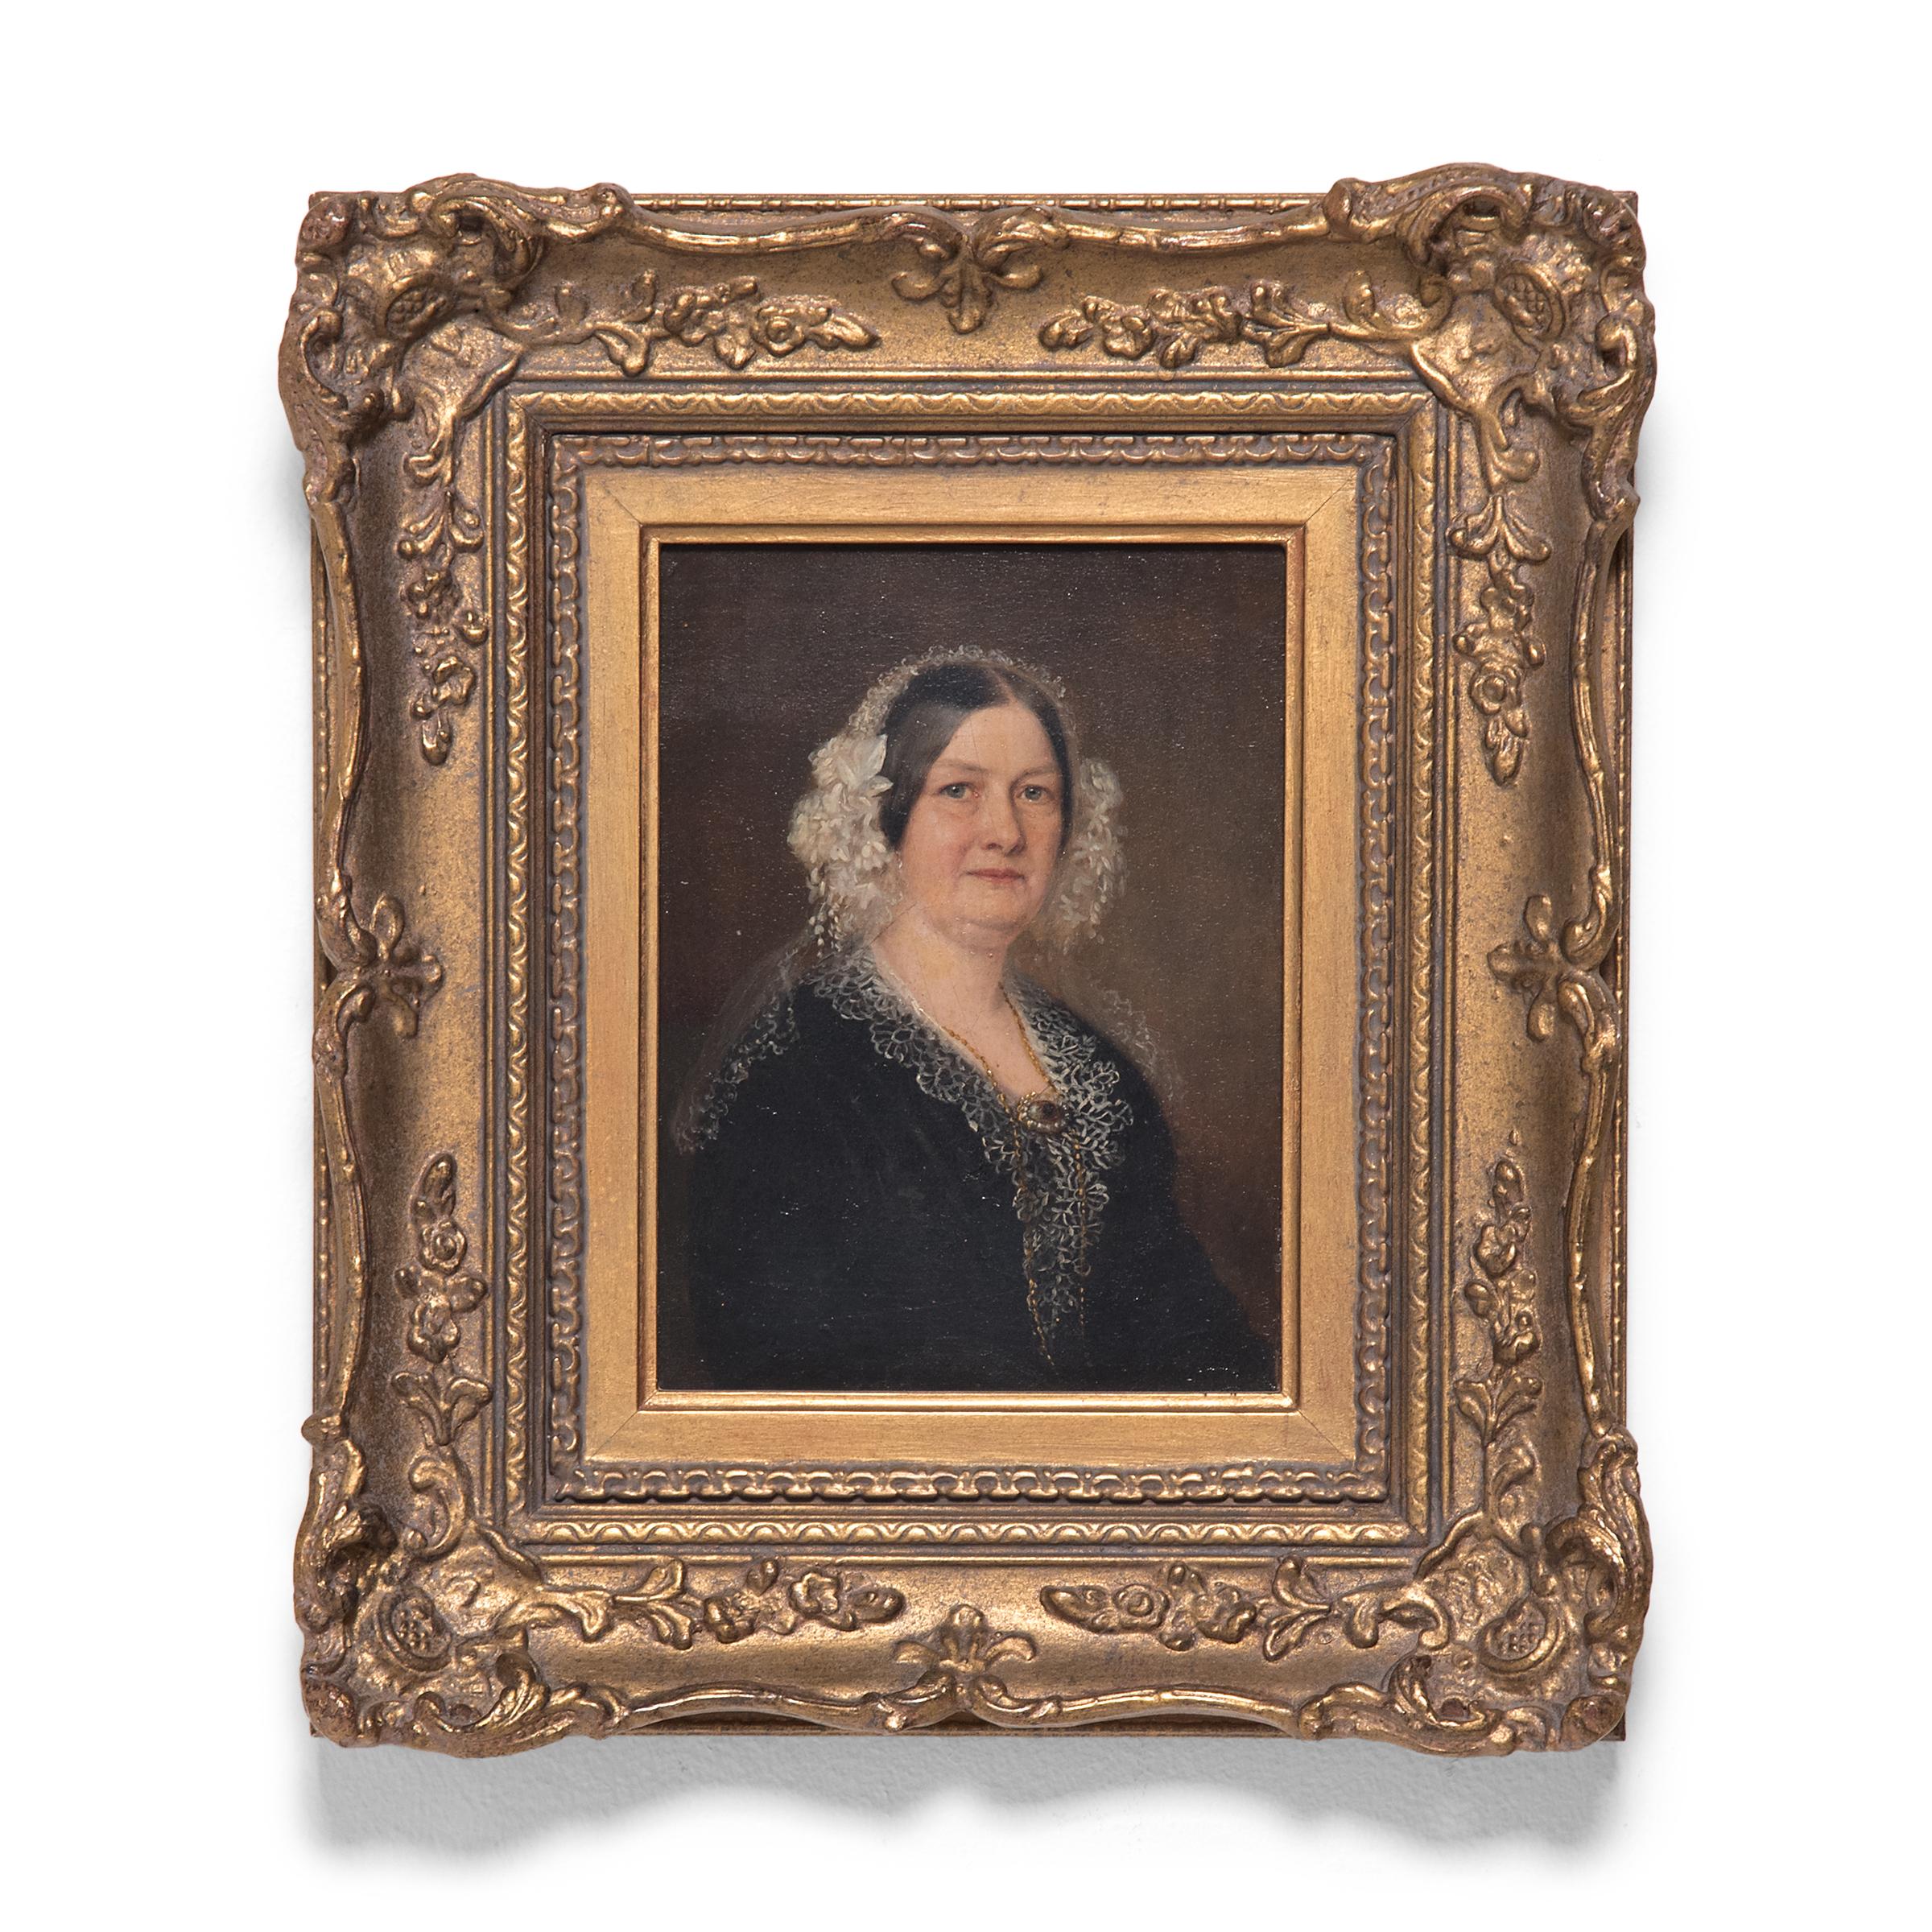 Unknown Portrait Painting - Oil Portrait of a Victorian Lady, c. 1850